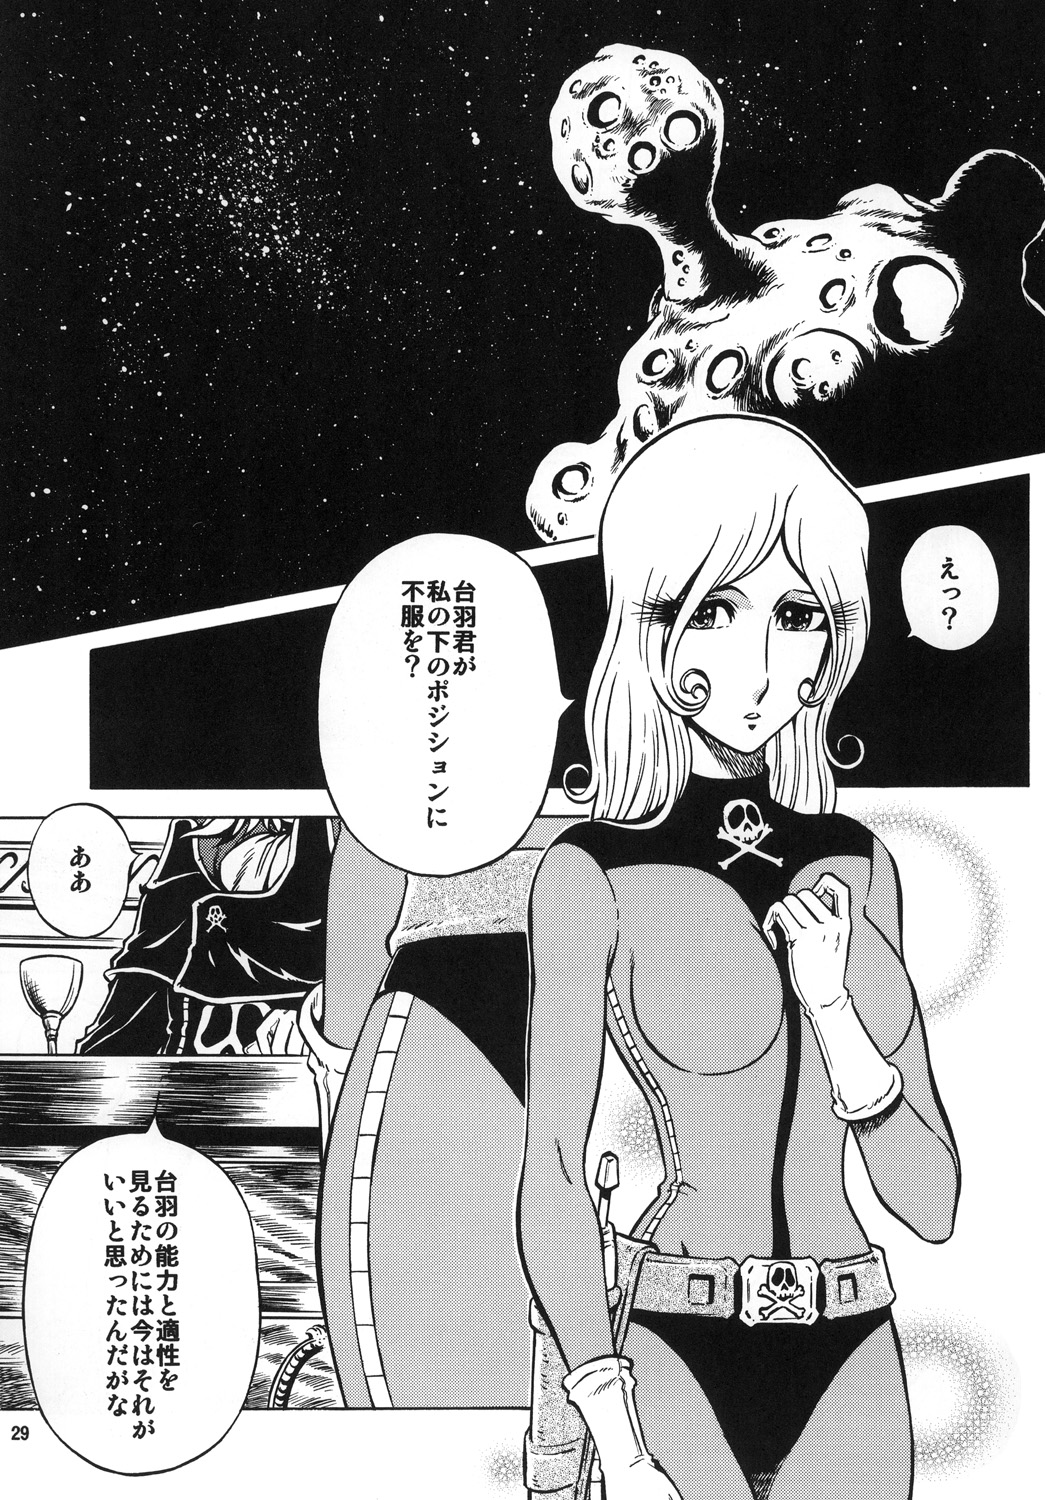 (C78) [Circle Taihei-Tengoku (Aratamaru)] NIGHTHEAD＋ (Galaxy Express 999) (C78) (同人誌) [サークル太平天国 (改多丸)] NIGHTHEAD＋ (銀河鉄道999)